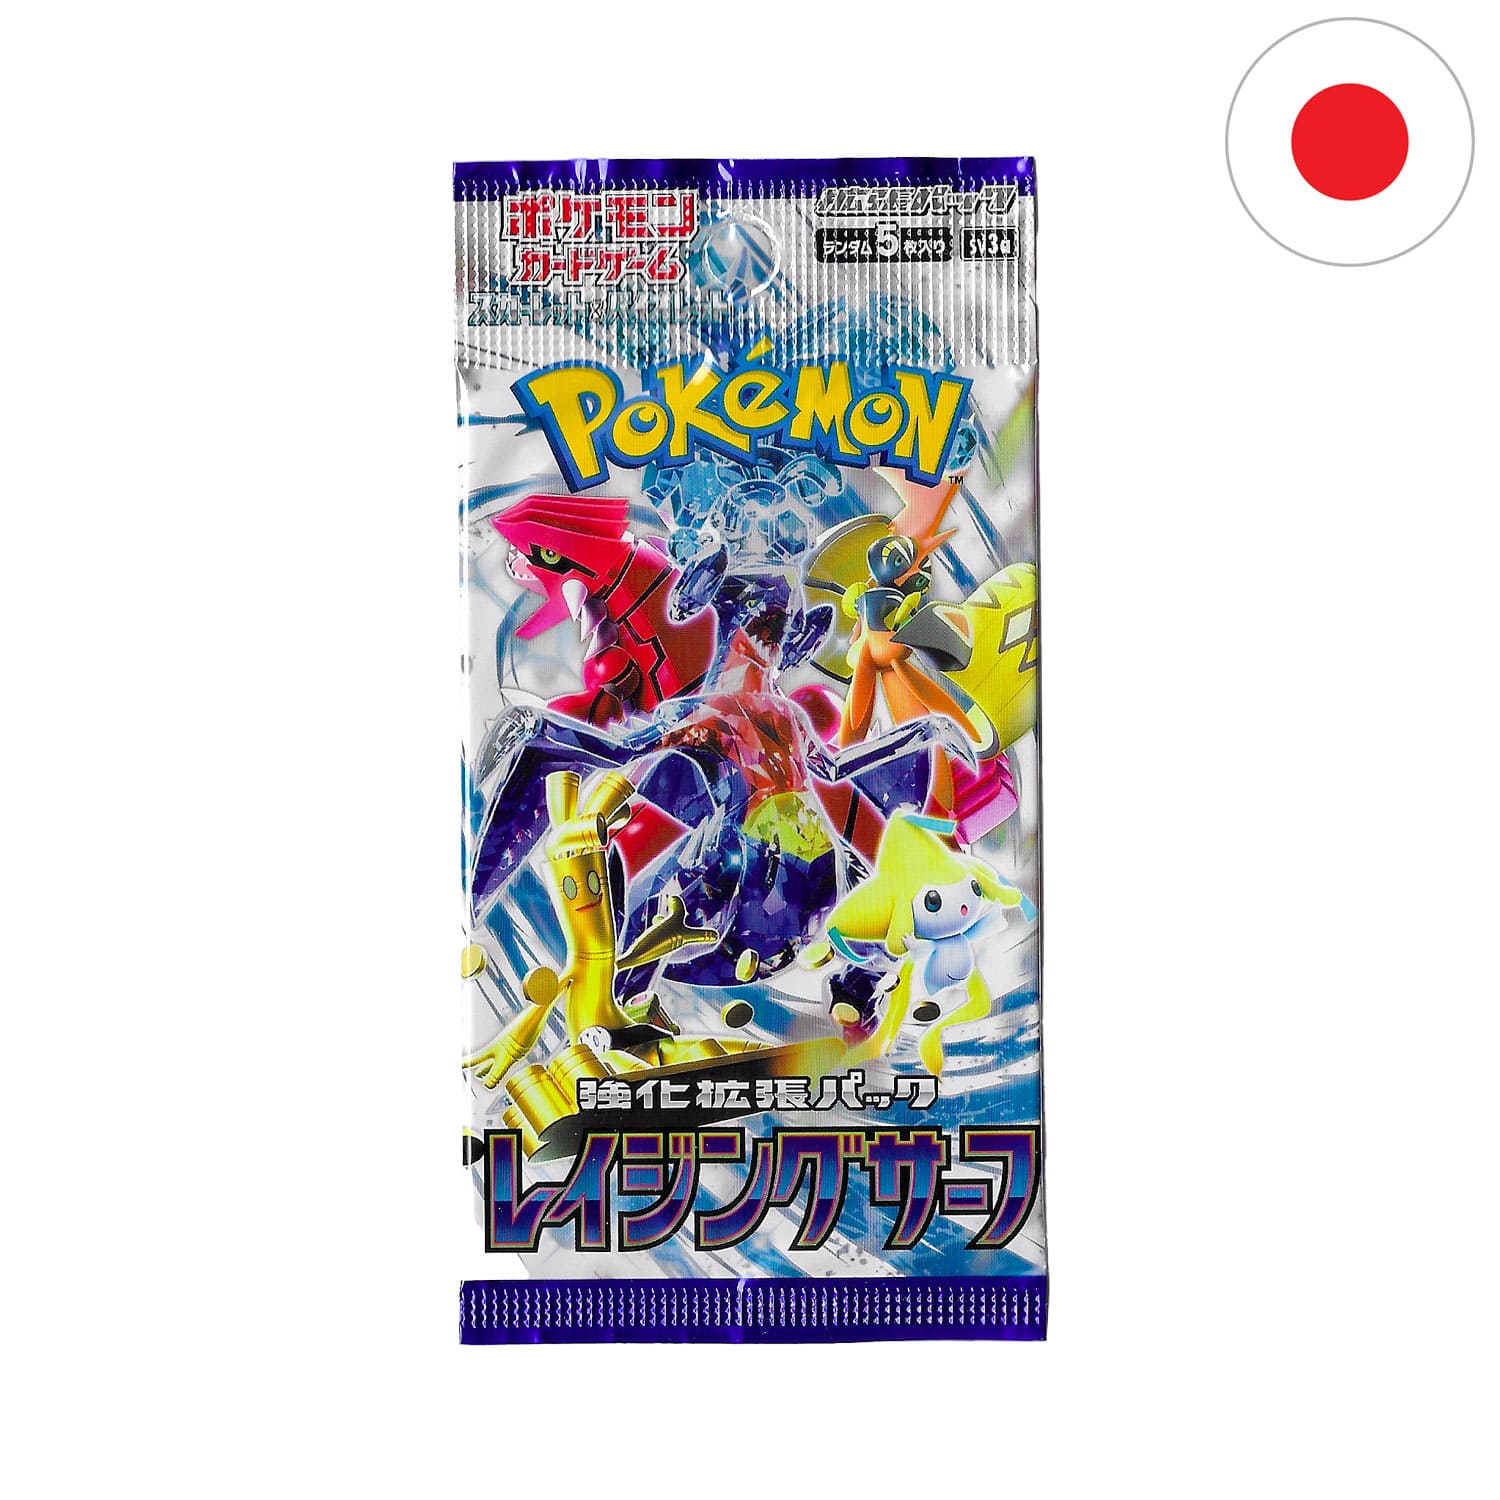 Das Pokemon Boosterpack Raging Surf als Scan mit Knackrack auf dem Cover und der Flagge Japans in der Ecke.